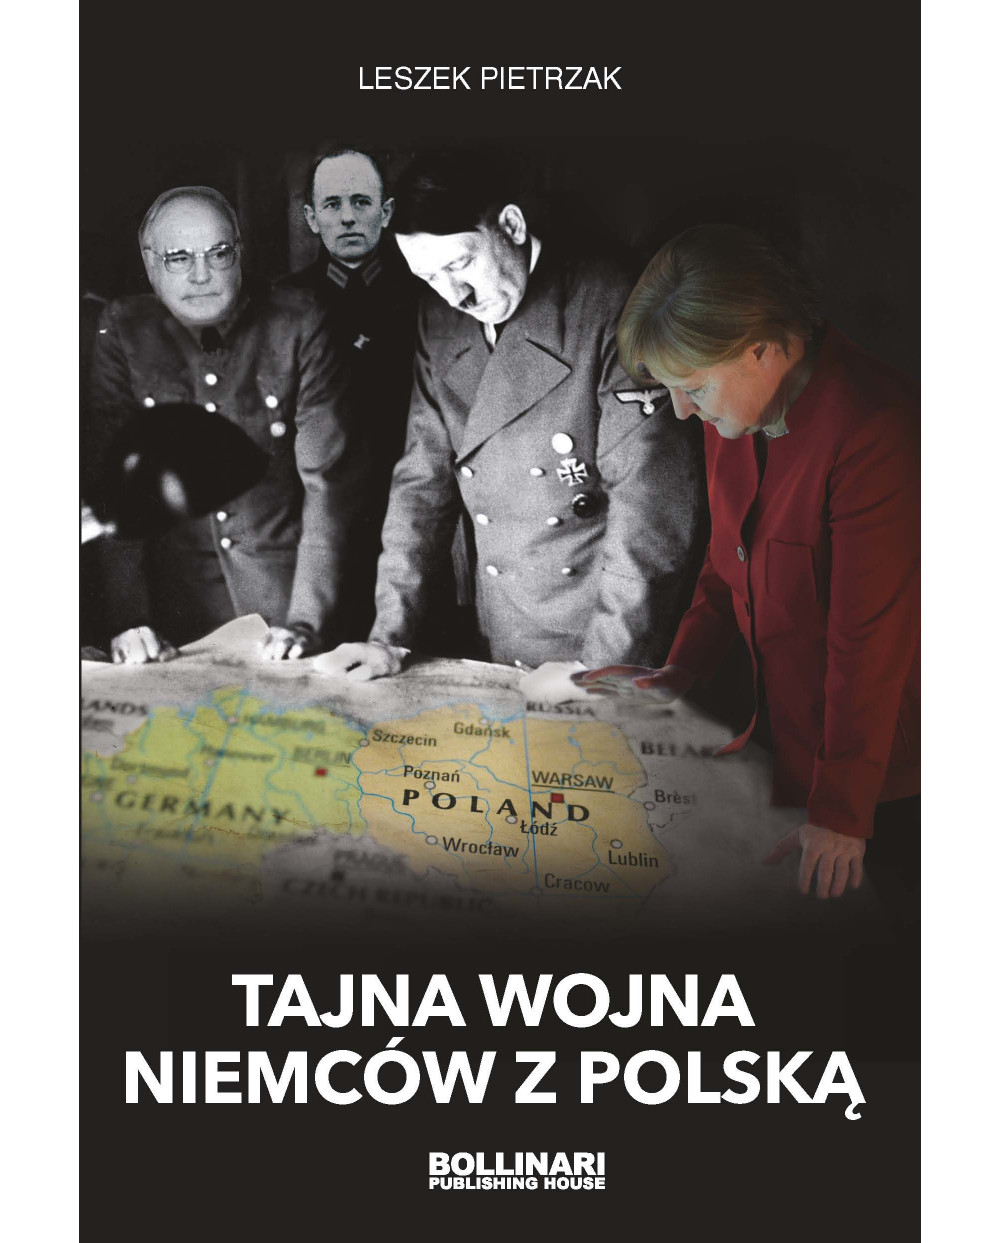 Leszek Pietrzak - Tajna wojna Niemców z Polską (wyd. II) - eBOOK